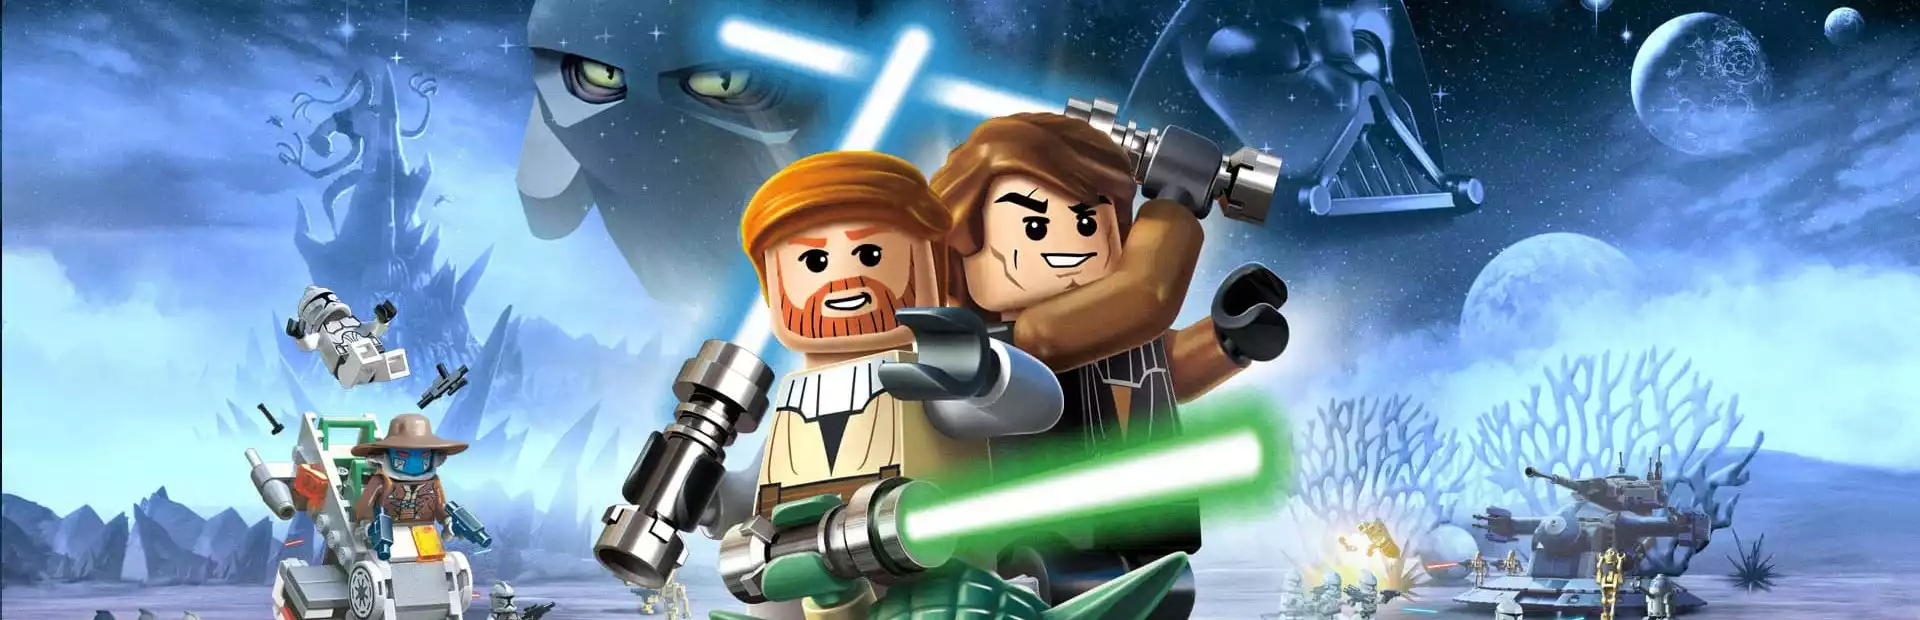 LEGO Star Wars III - The Clone Wars Steam Key GLOBAL